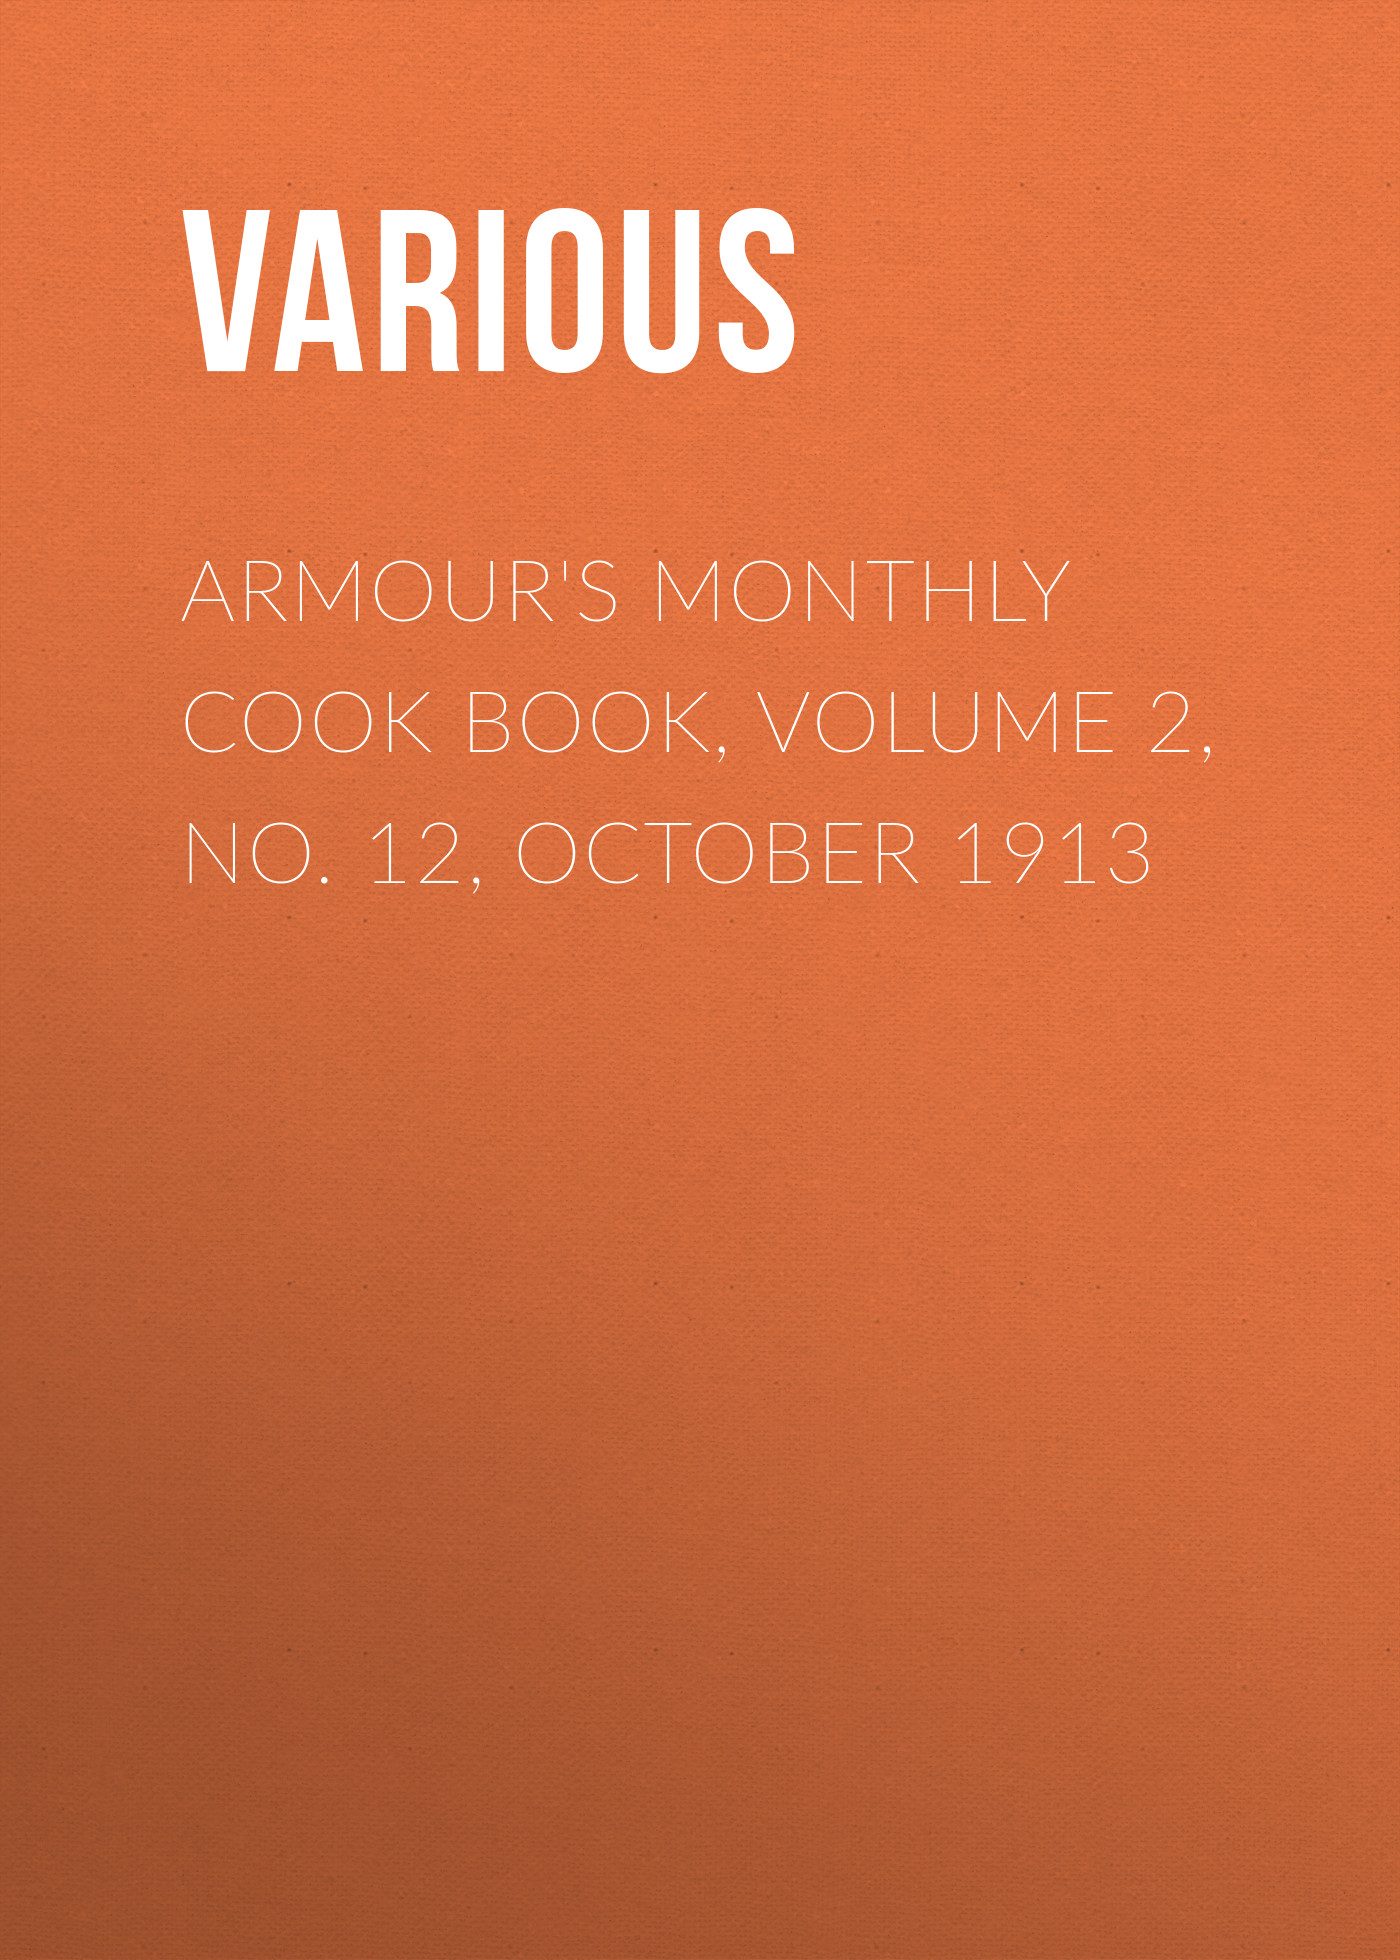 Книга Armour's Monthly Cook Book, Volume 2, No. 12, October 1913 из серии , созданная  Various, может относится к жанру Журналы, Зарубежная образовательная литература. Стоимость электронной книги Armour's Monthly Cook Book, Volume 2, No. 12, October 1913 с идентификатором 25568903 составляет 0 руб.